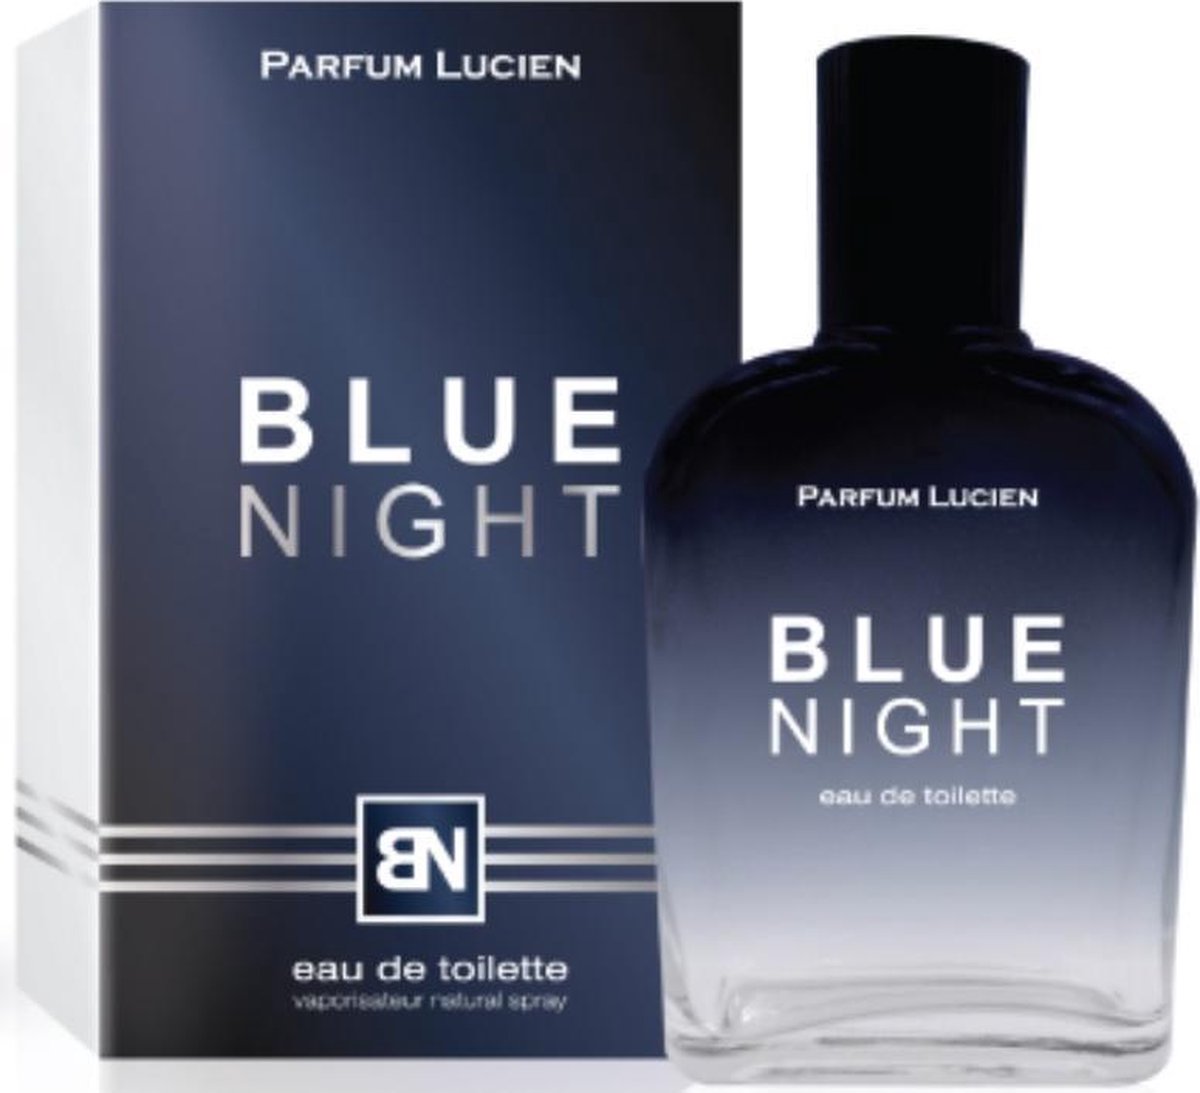 Parfum Lucien Blue Night | bol.com